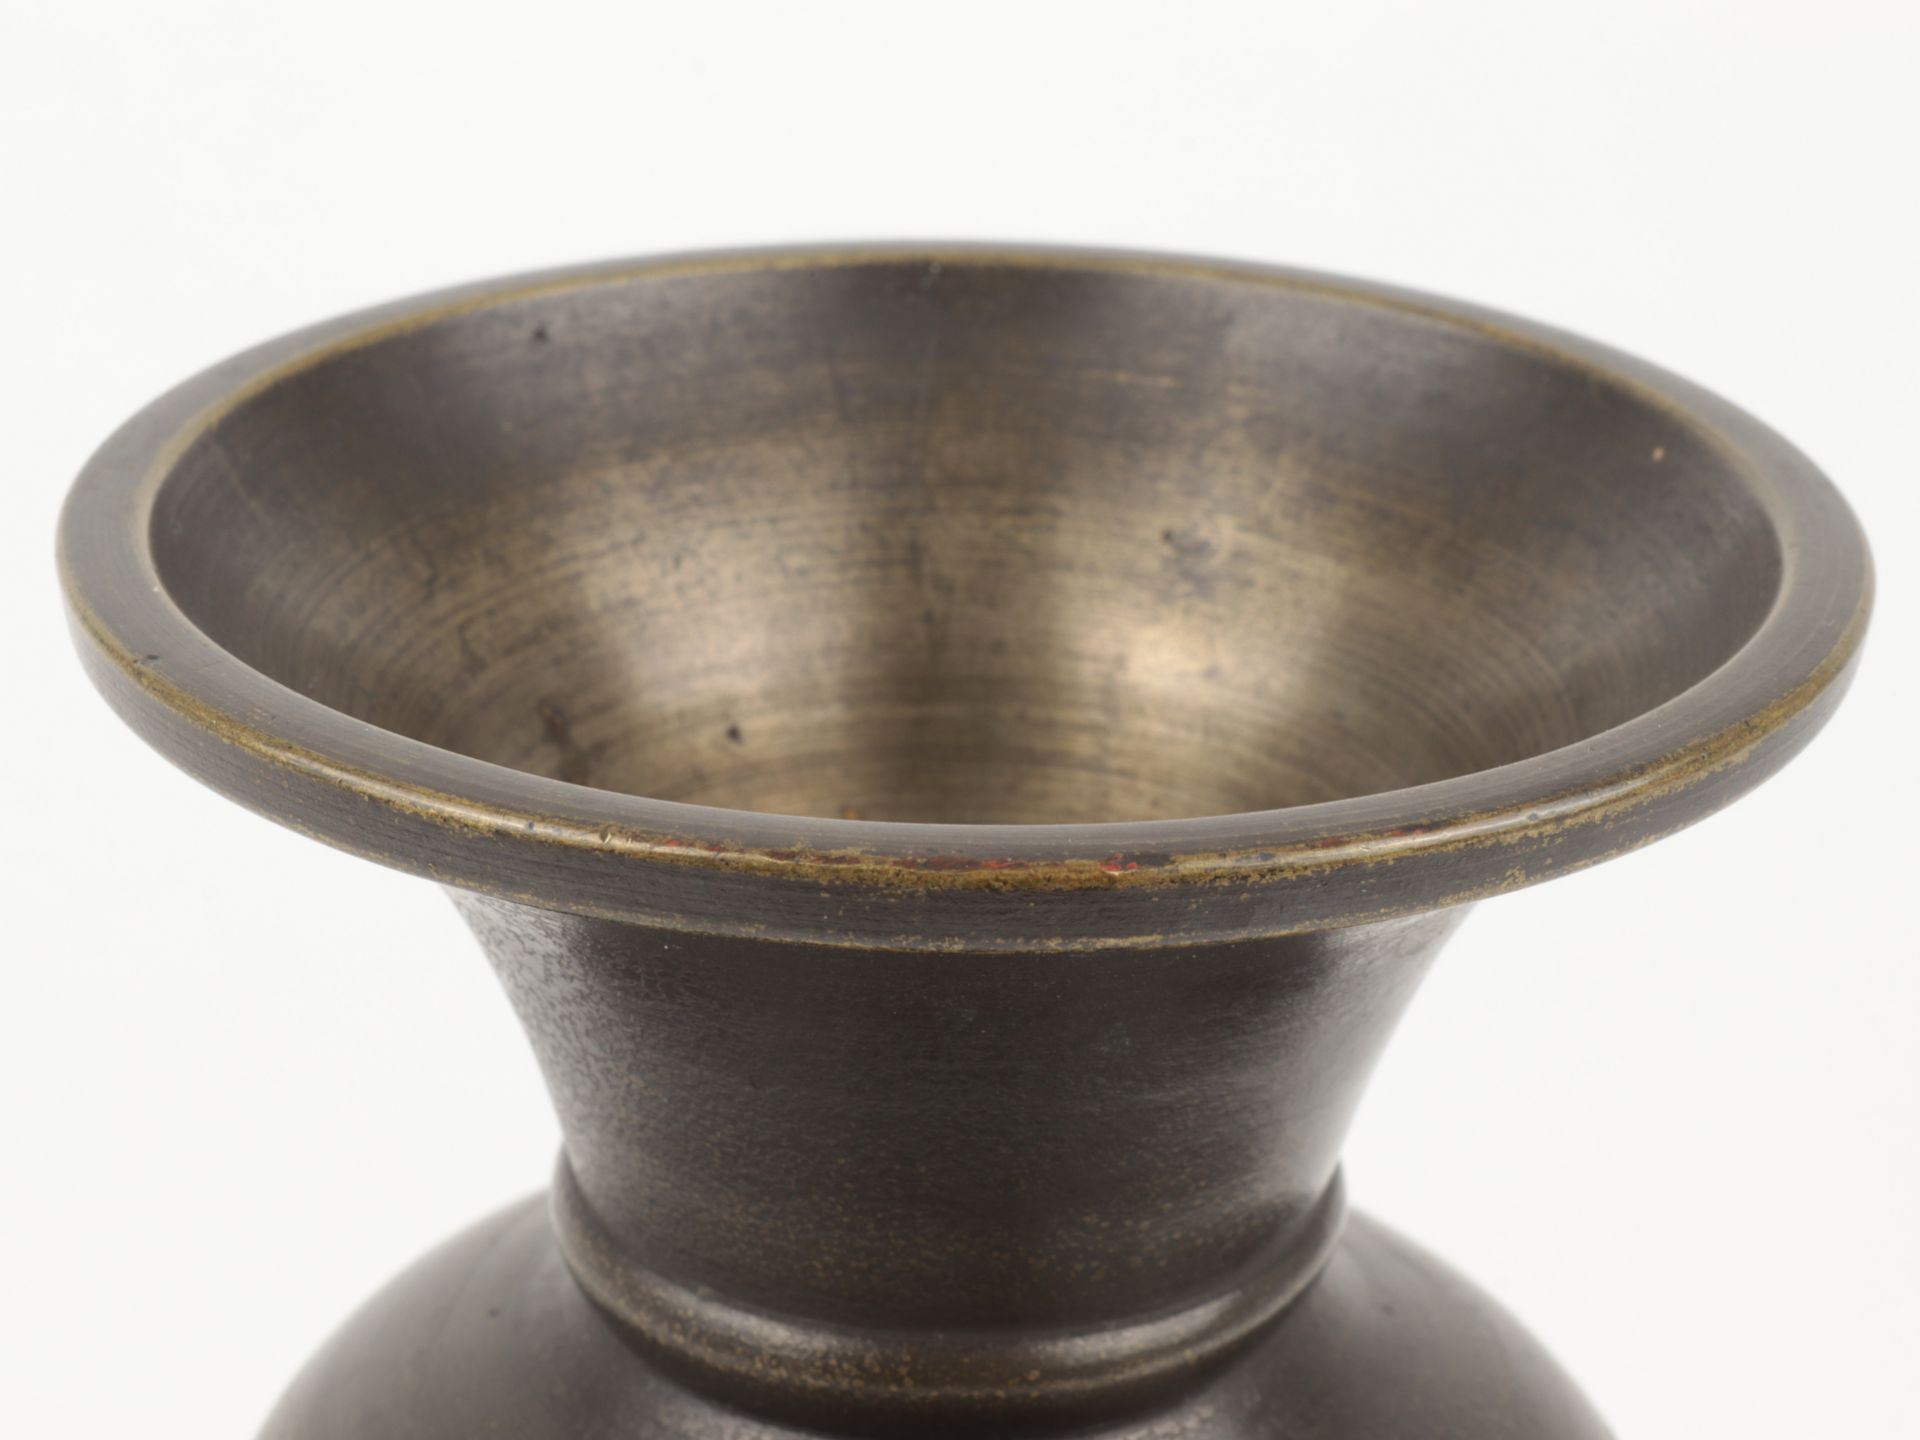 Vase um 1900, Japan, Bronze, reliefiert, Ritzdekor u. Metallauflagen in Kupfer, Messing u. a., - Bild 5 aus 5